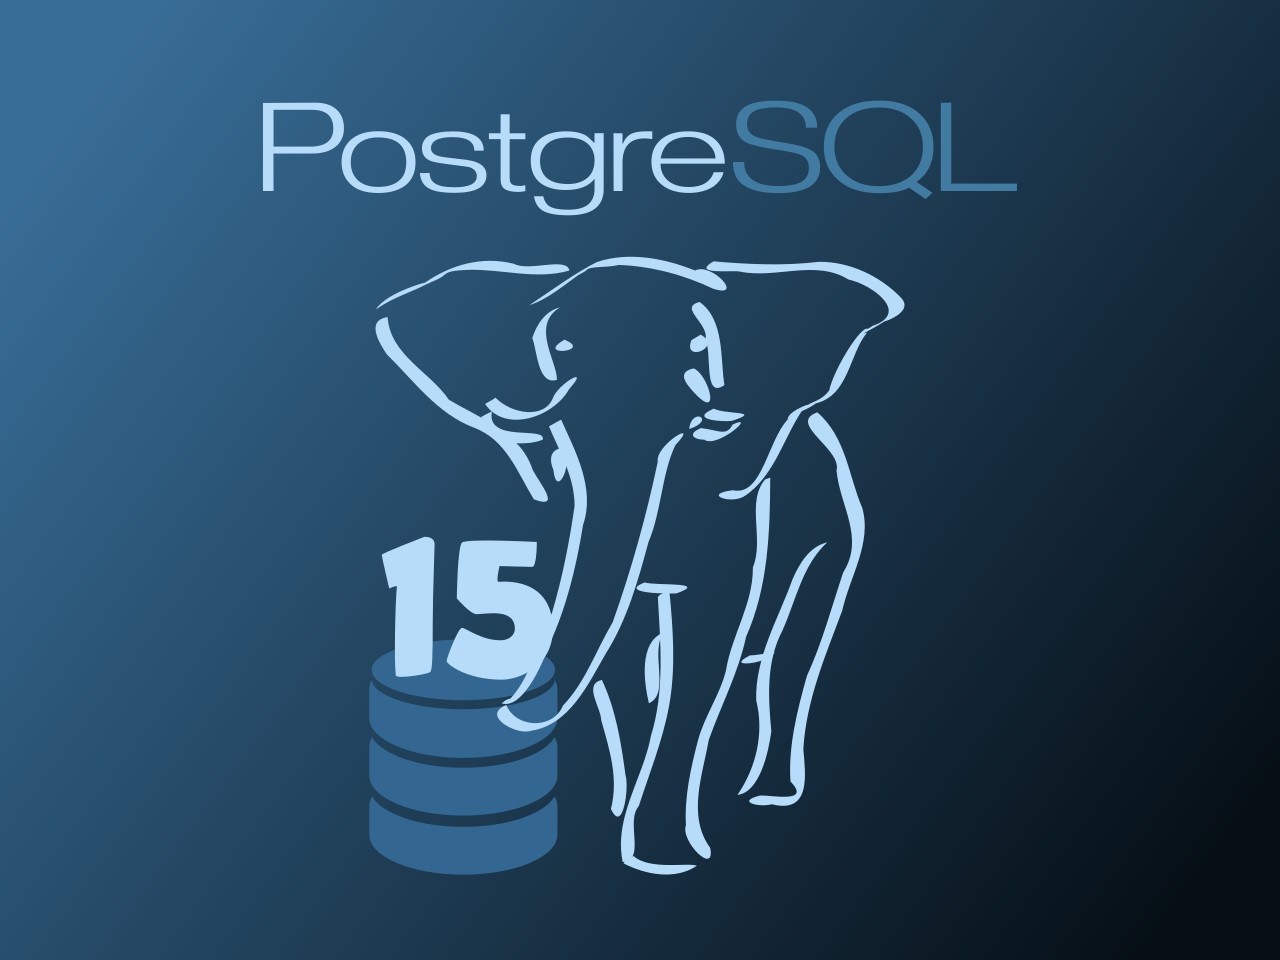 Novinky, které přineslo PostgreSQL 15